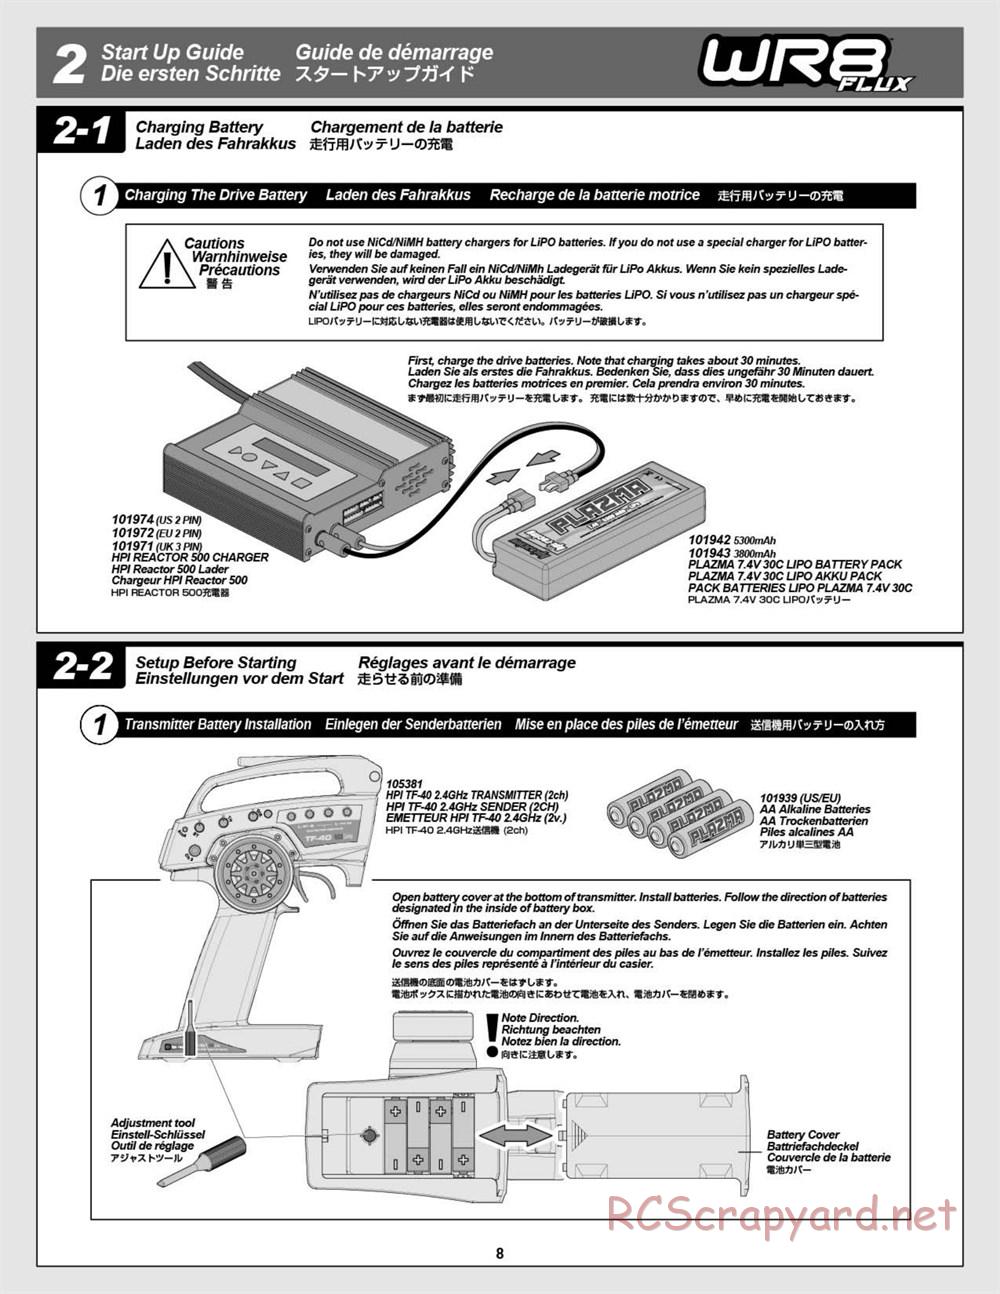 HPI - WR8 Flux - Manual - Page 8